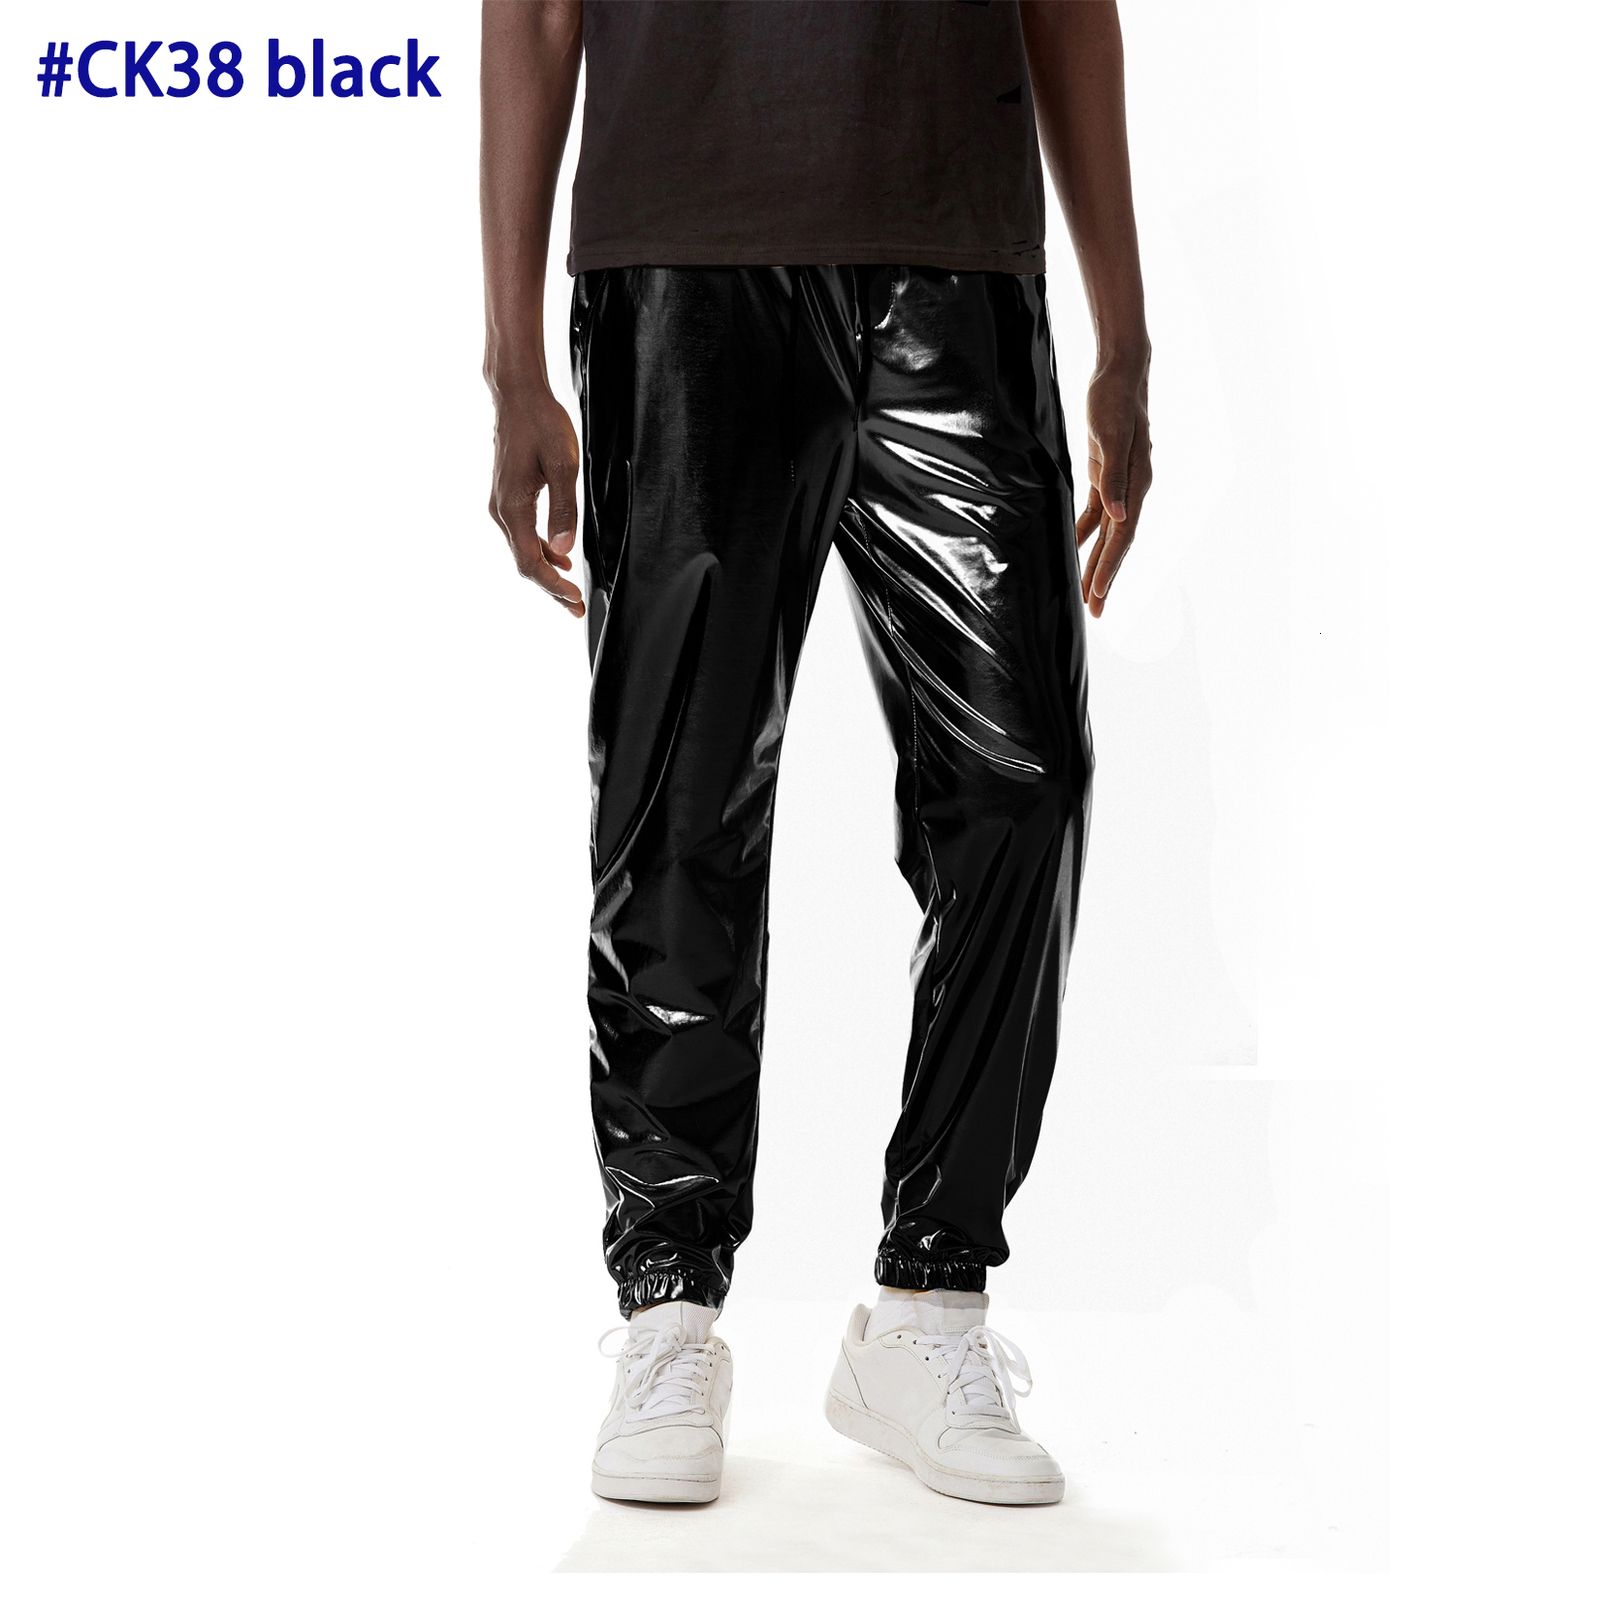 CK38 svart